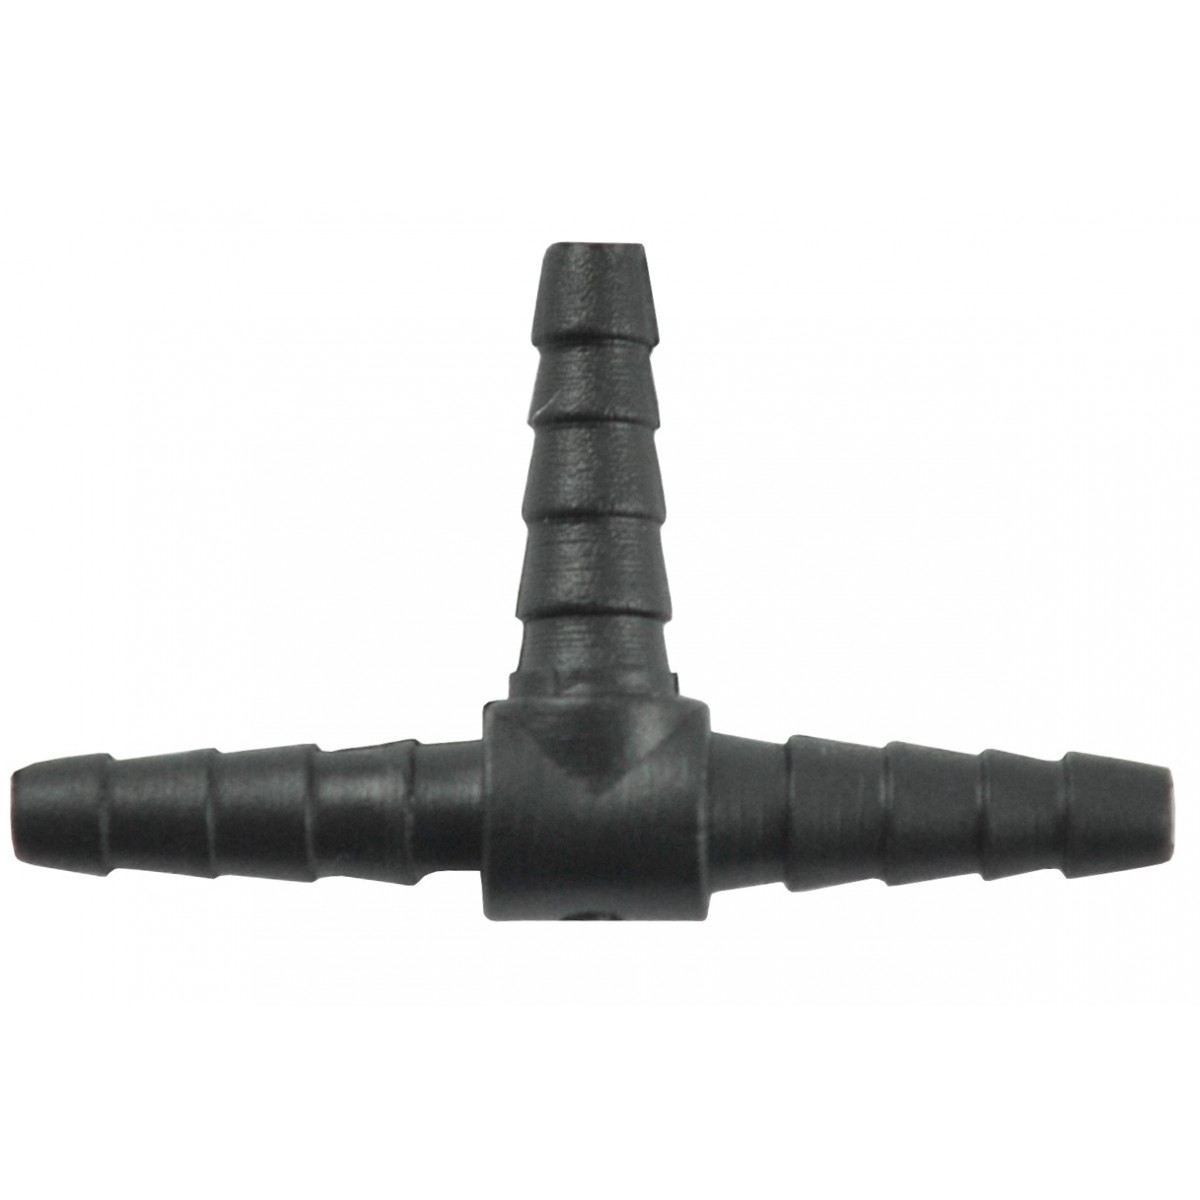 Tee 37x22x4 / 5 mm, joint, nipple, air hose splitter, PLASTIK liquids